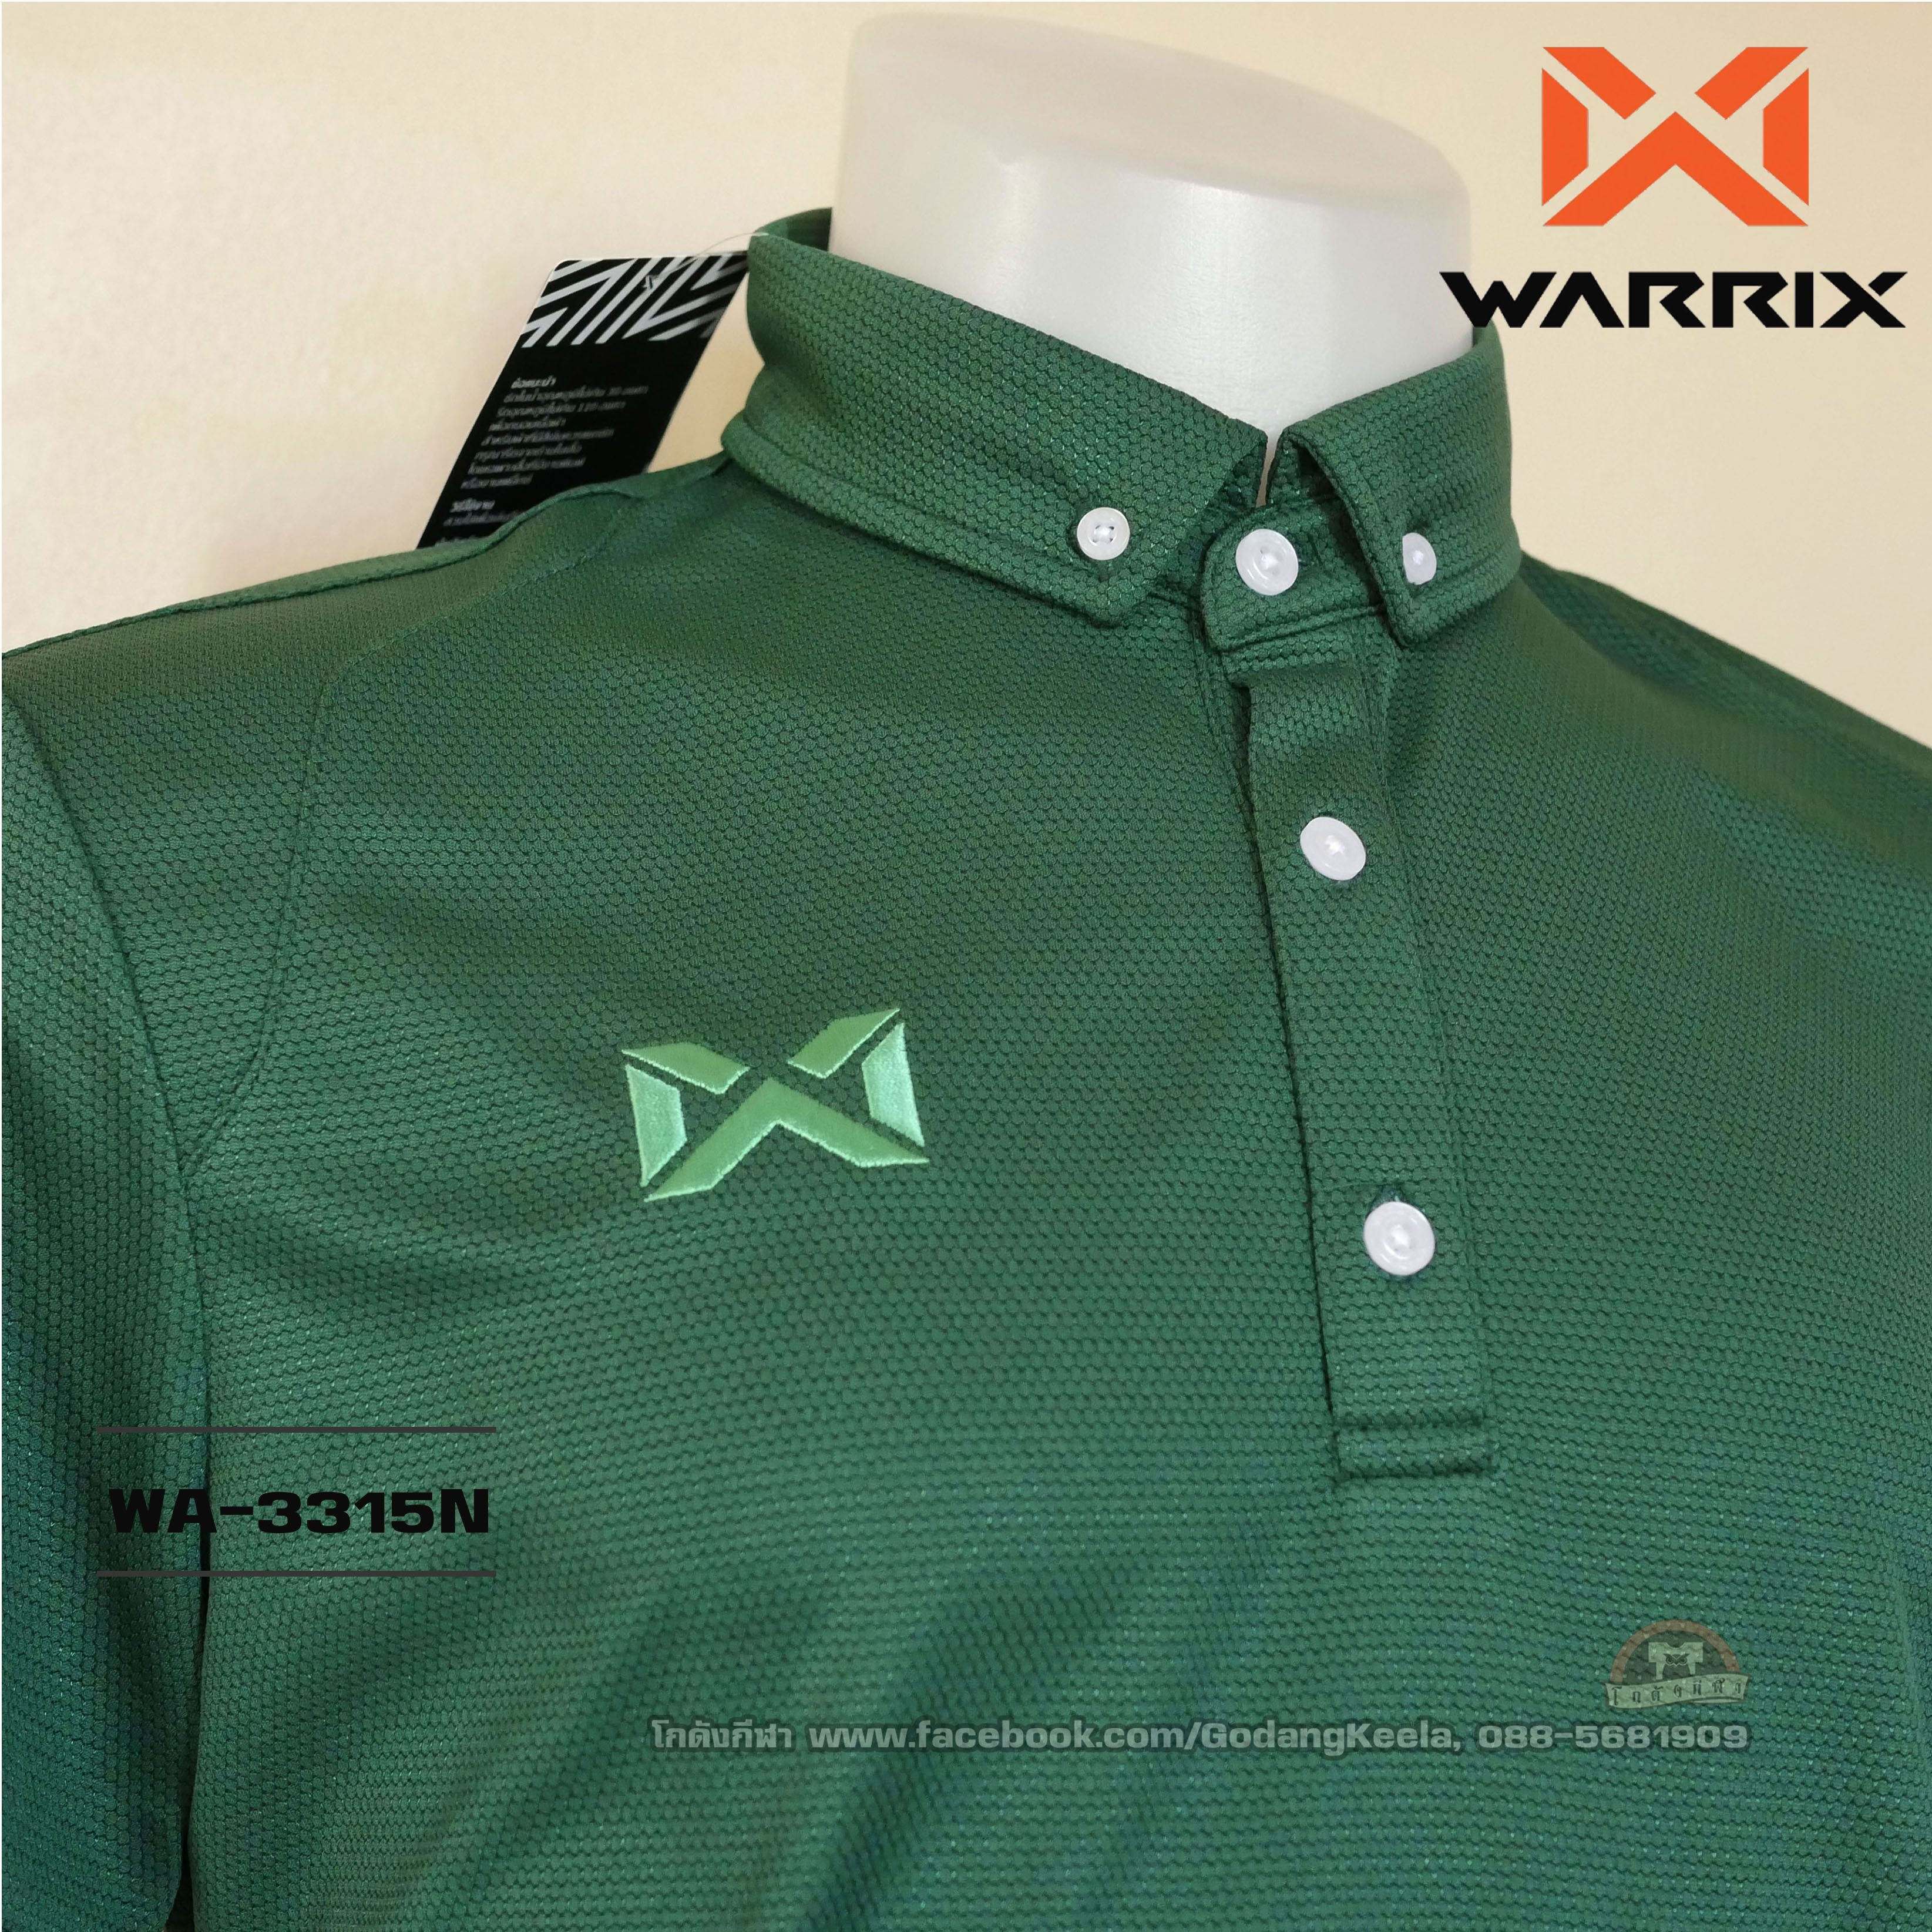 เสื้อโปโล WARRIX รุ่น WA-3315N สีเขียวเข้ม (GG) วอริกซ์ ของแท้ 100%